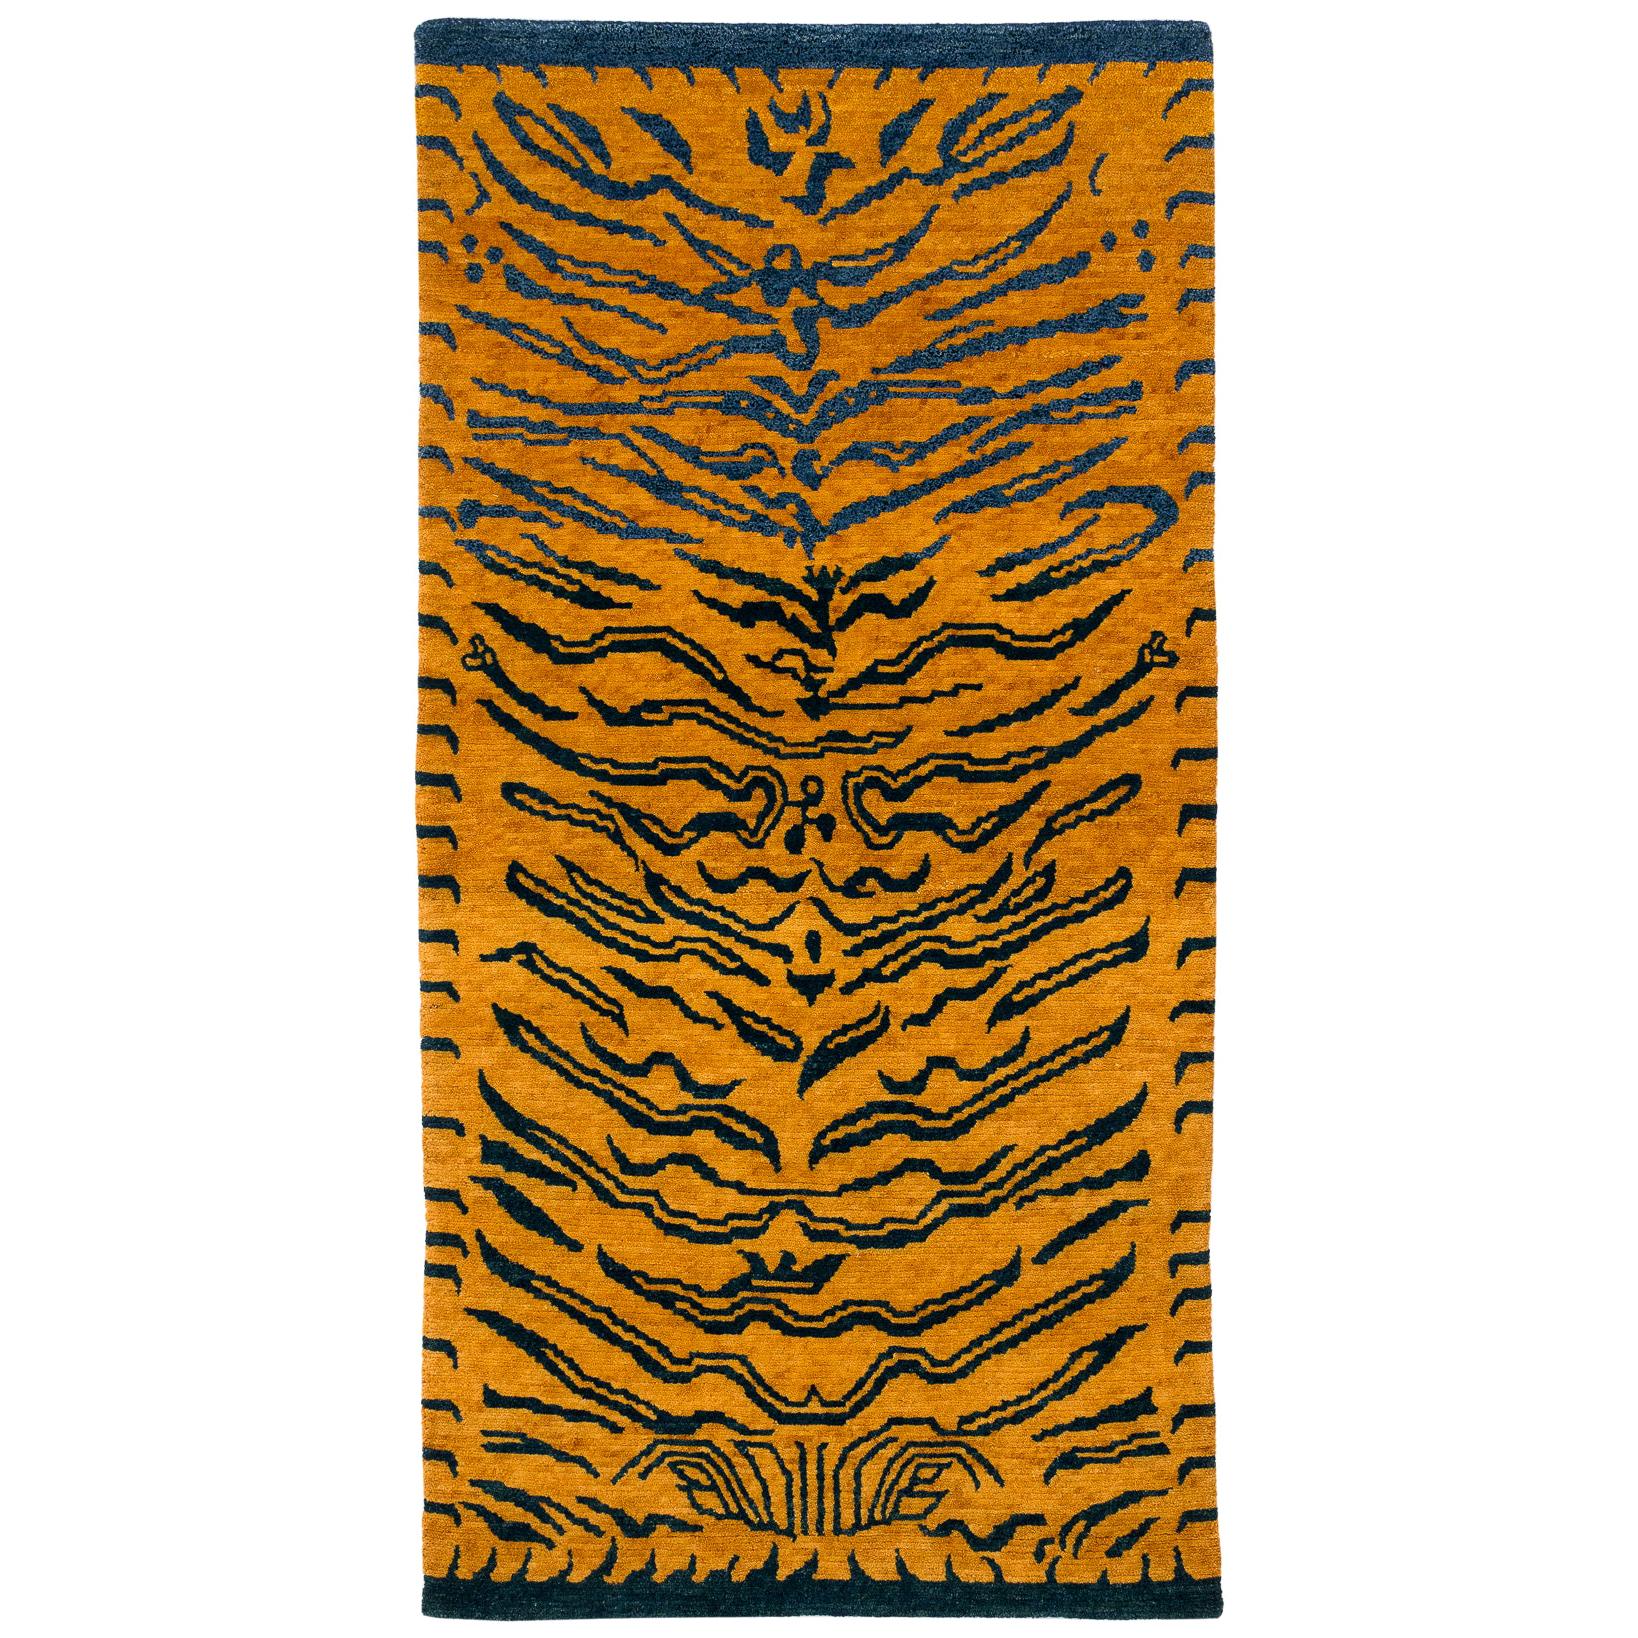 Tigerteppich in Indigoblau und Gold aus Wolle